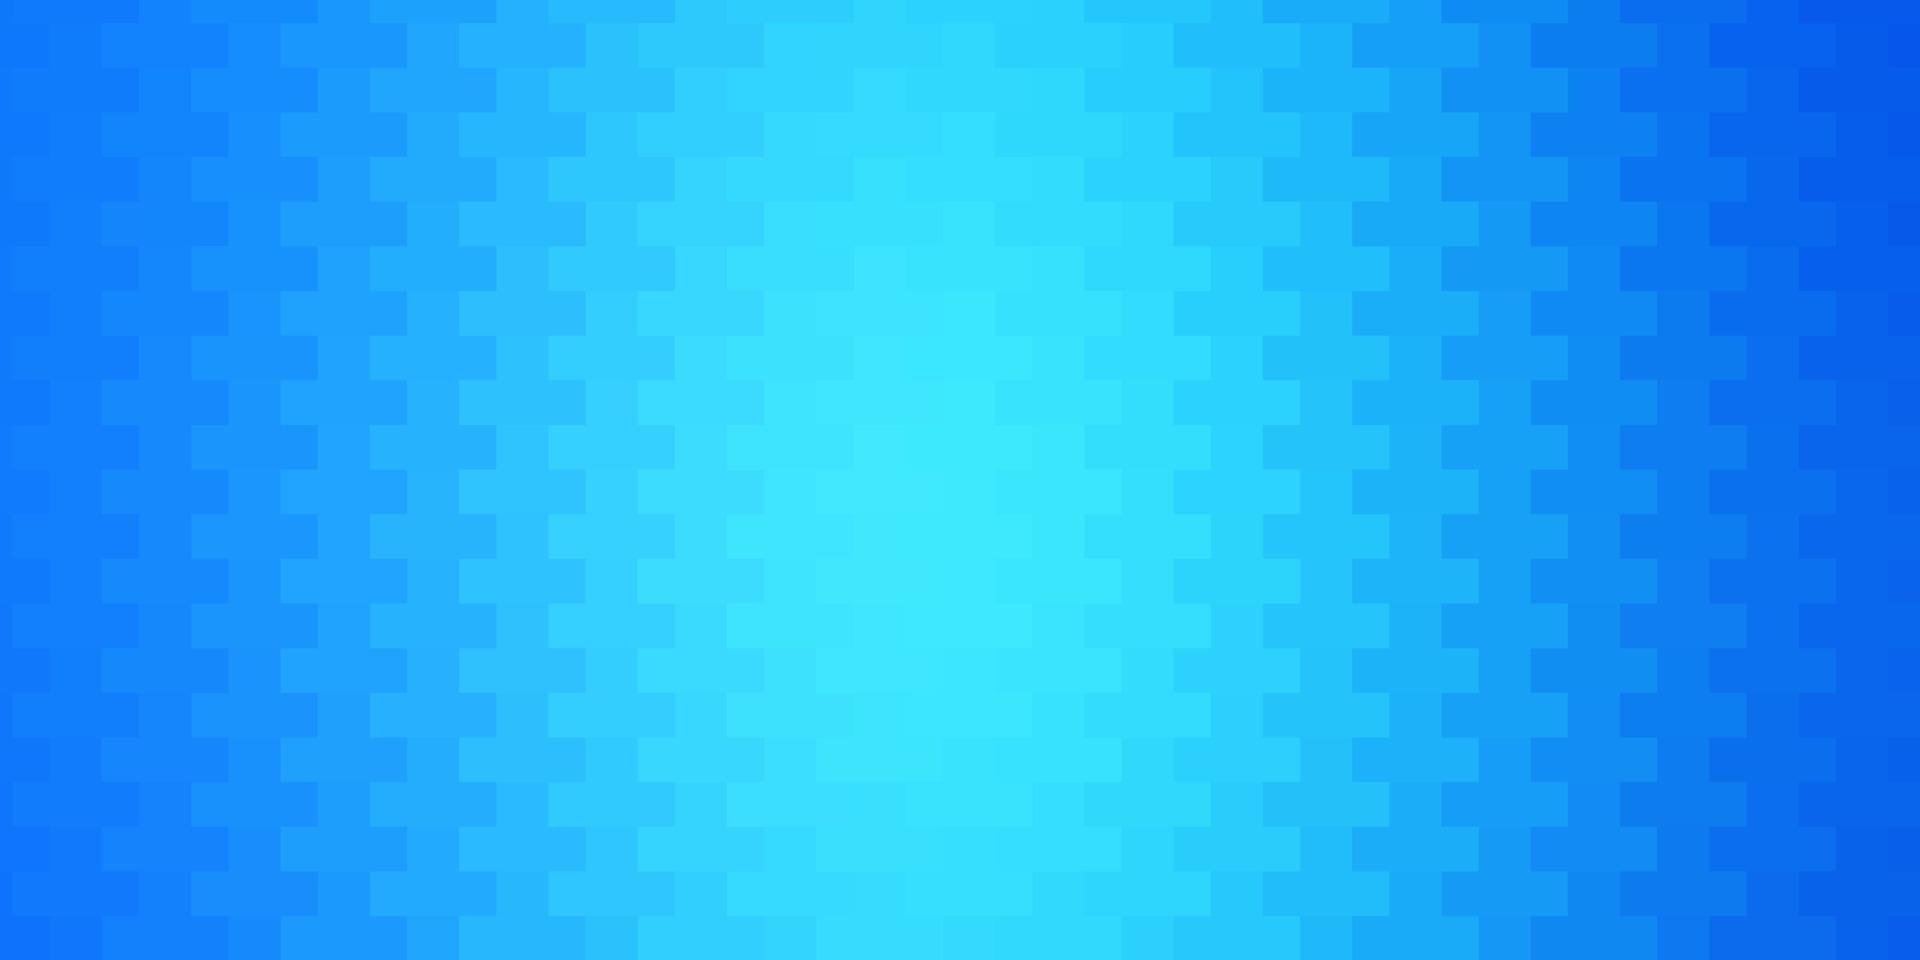 ljusblå vektormall med rektanglar. vektor